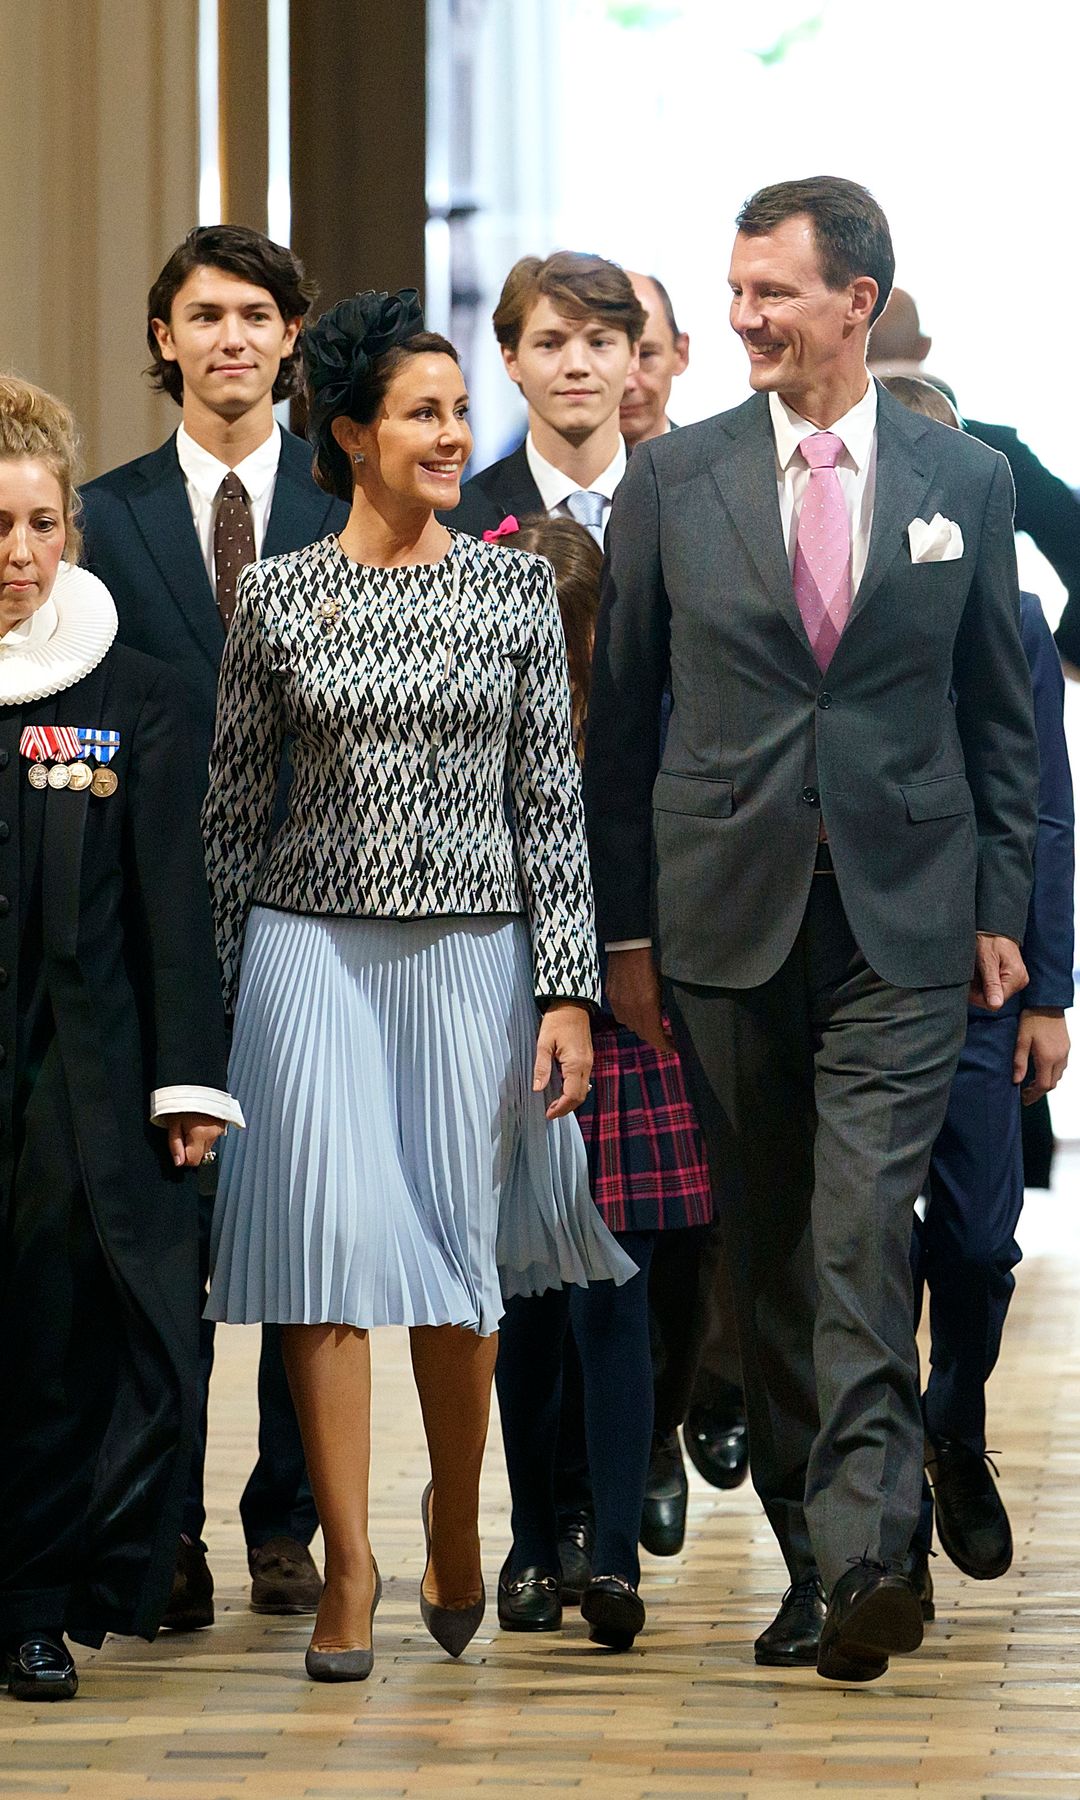 El conde Felix (príncipe danés hasta el año 2022) forma parte de la Familia Real pero su presencia en la vida institucional está limitada a actos de carácter familiar en compañía de su padre, el príncipe Joaquín